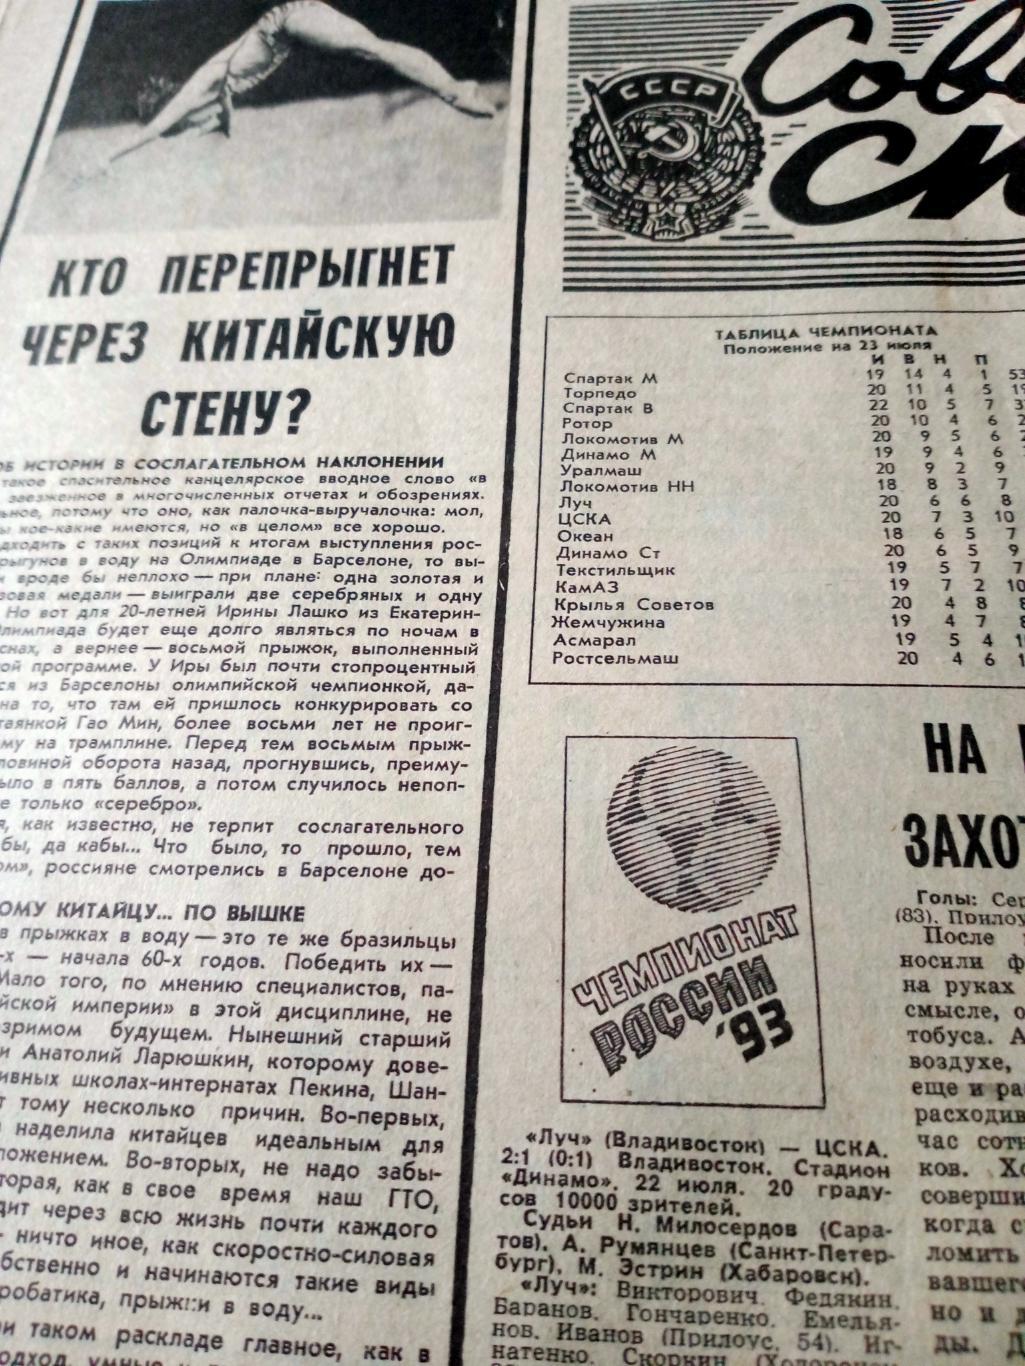 АРХИВ НХЛ. Советский спорт. 1993 год. 23 июля